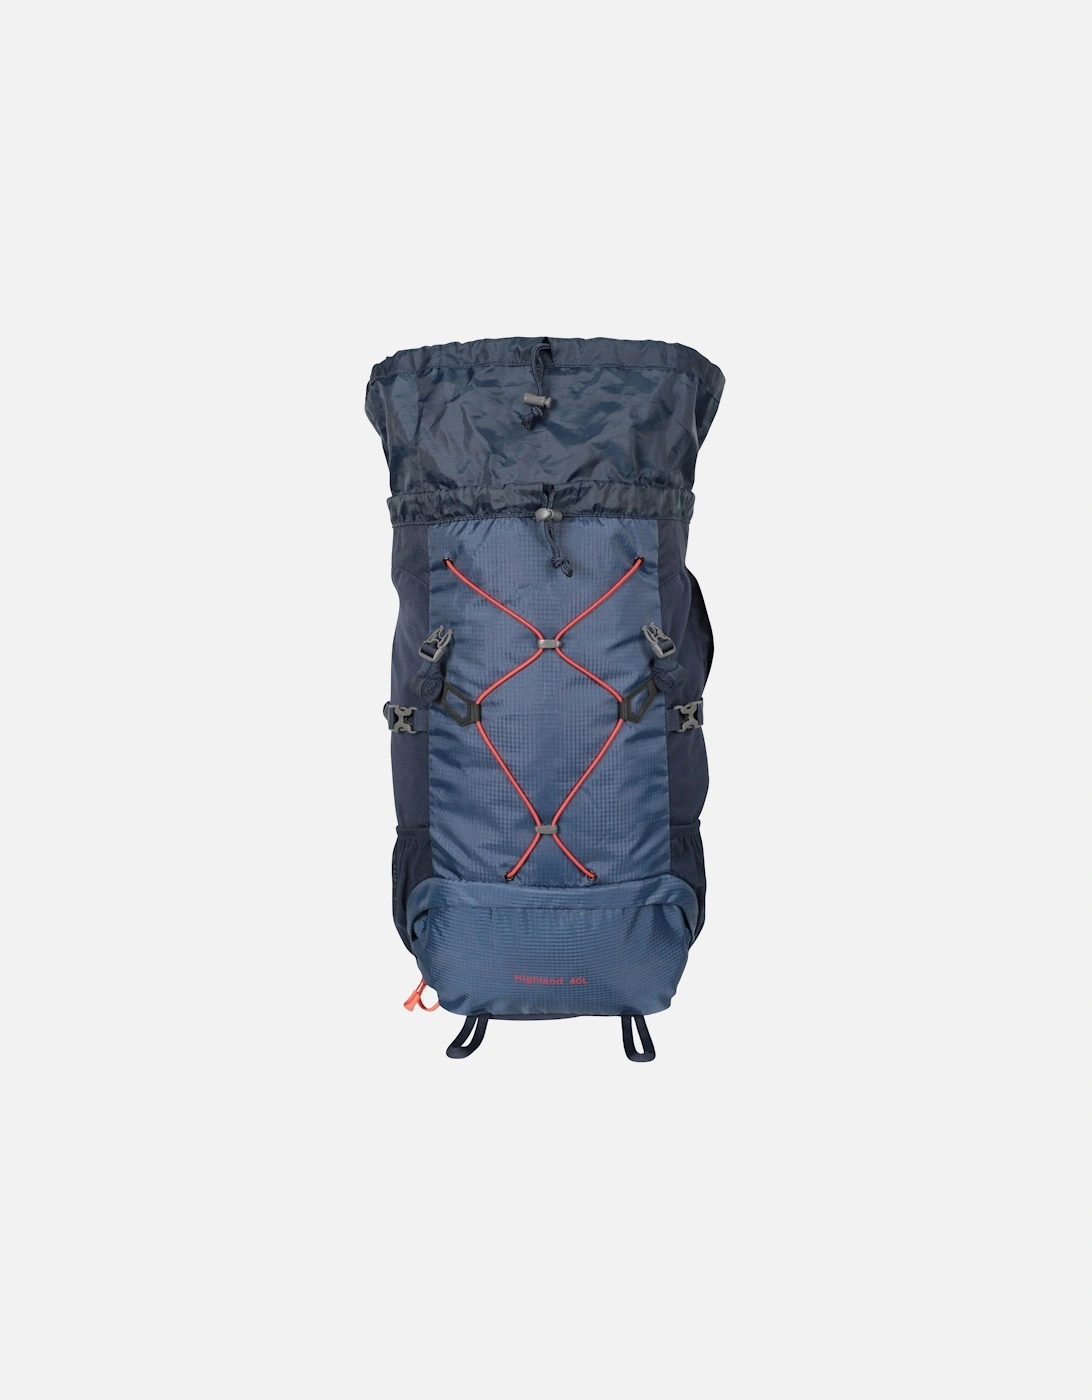 Highlands 40L Backpack